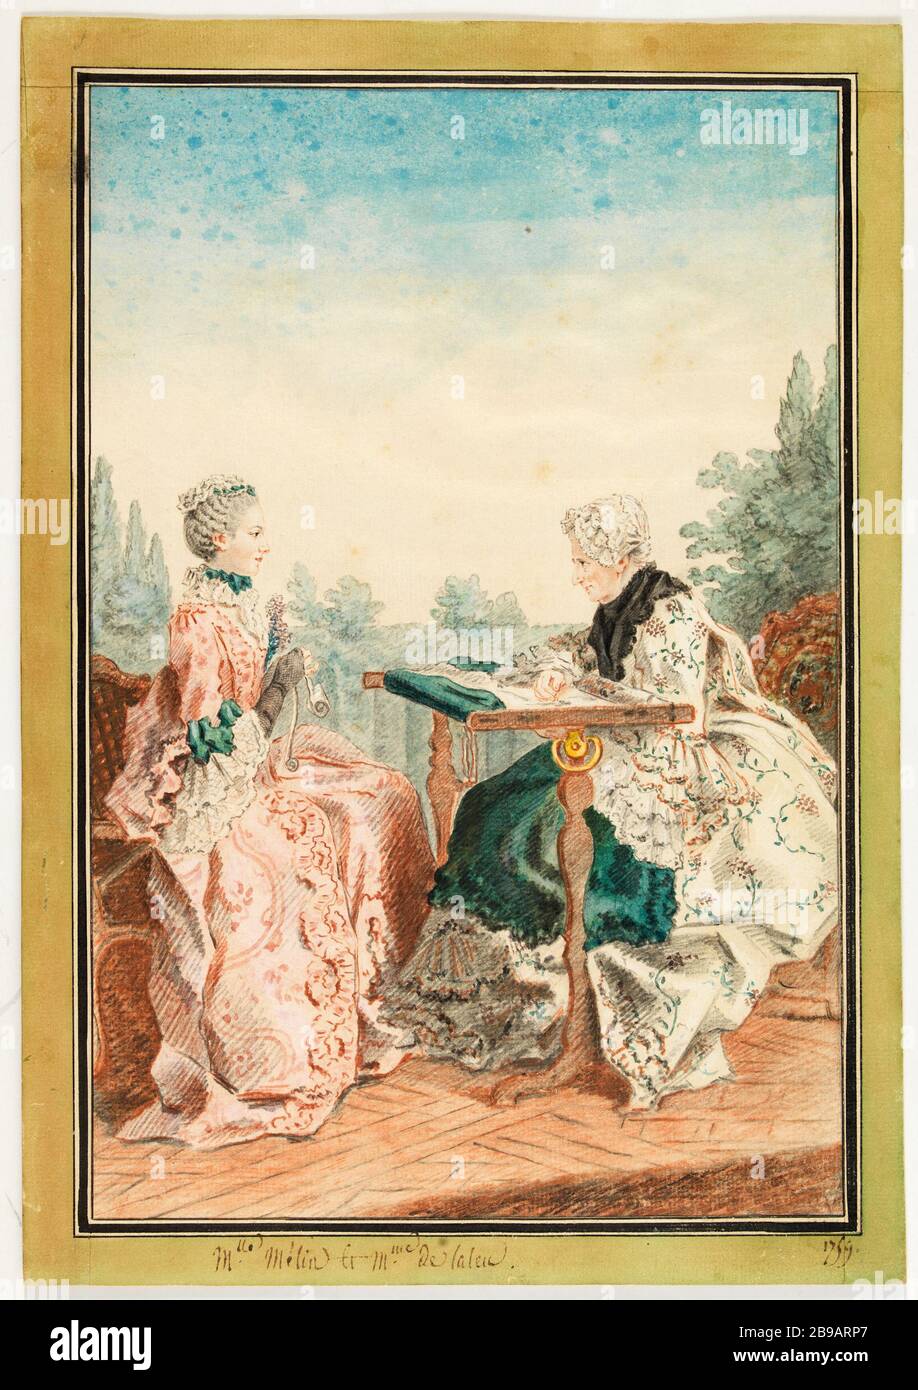 Frau Laleu, ihr Webstuhl mit Wandteppich und Frau Melin, die in einem Garten arbeitet, 1759 Carmontelle. "Mme Laleu à son métier à tapisserie et Mlle Mélin travaillant dans un jardin, 1759". En1759-1759. Paris, musée Carnavalet. Stockfoto